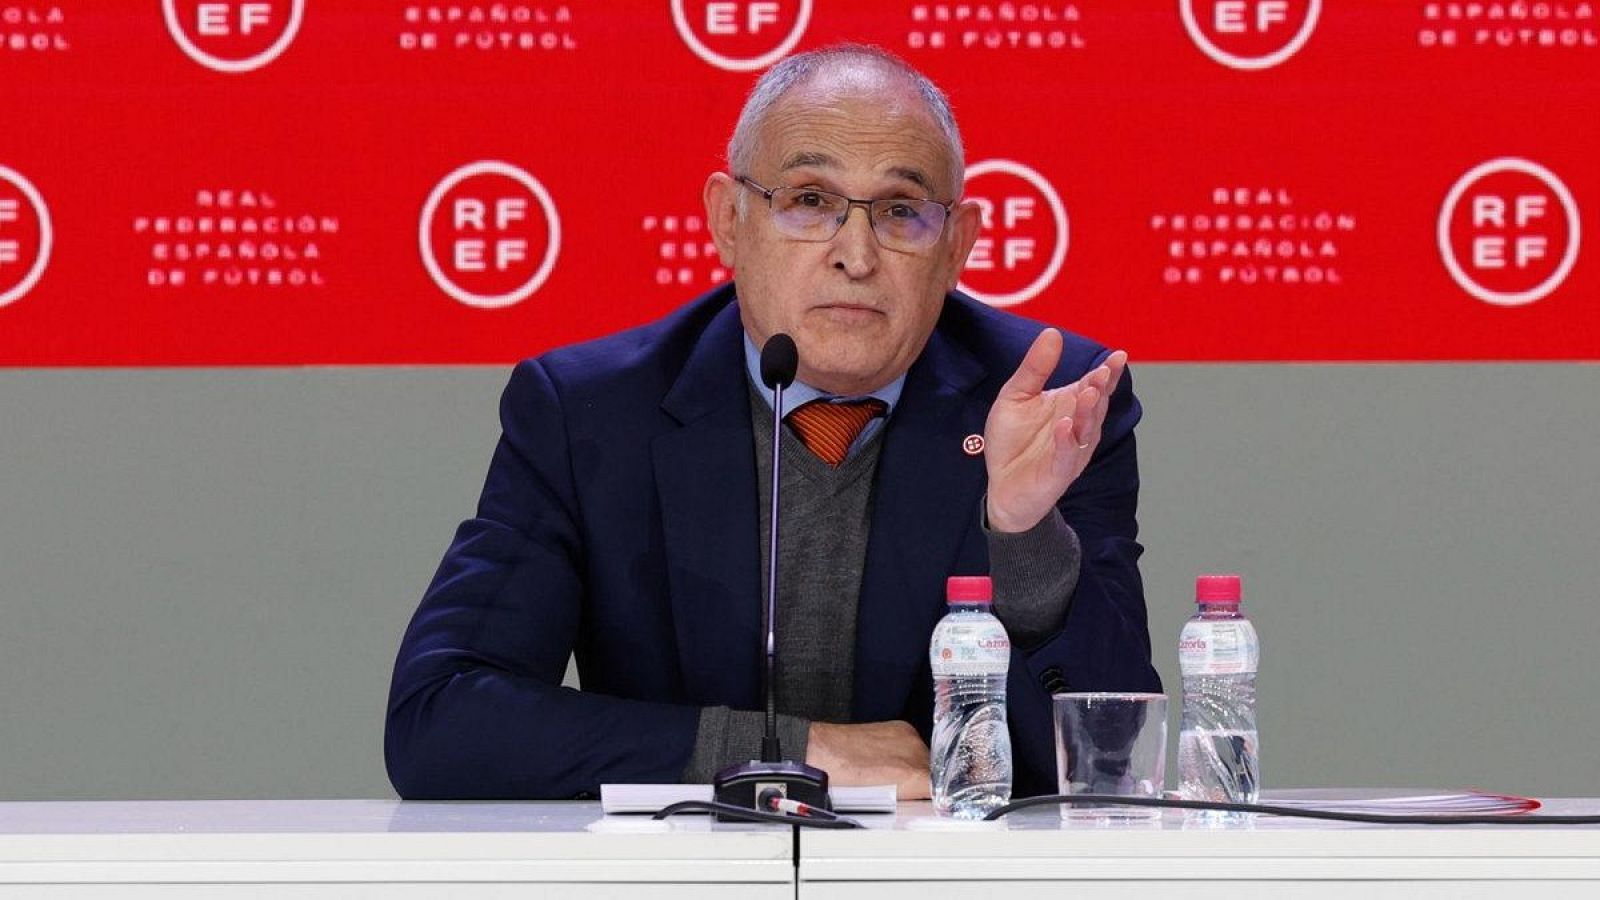 Primera medida tras la reunión RFEF-CSD: Andreu Camps, secretario general, destituido